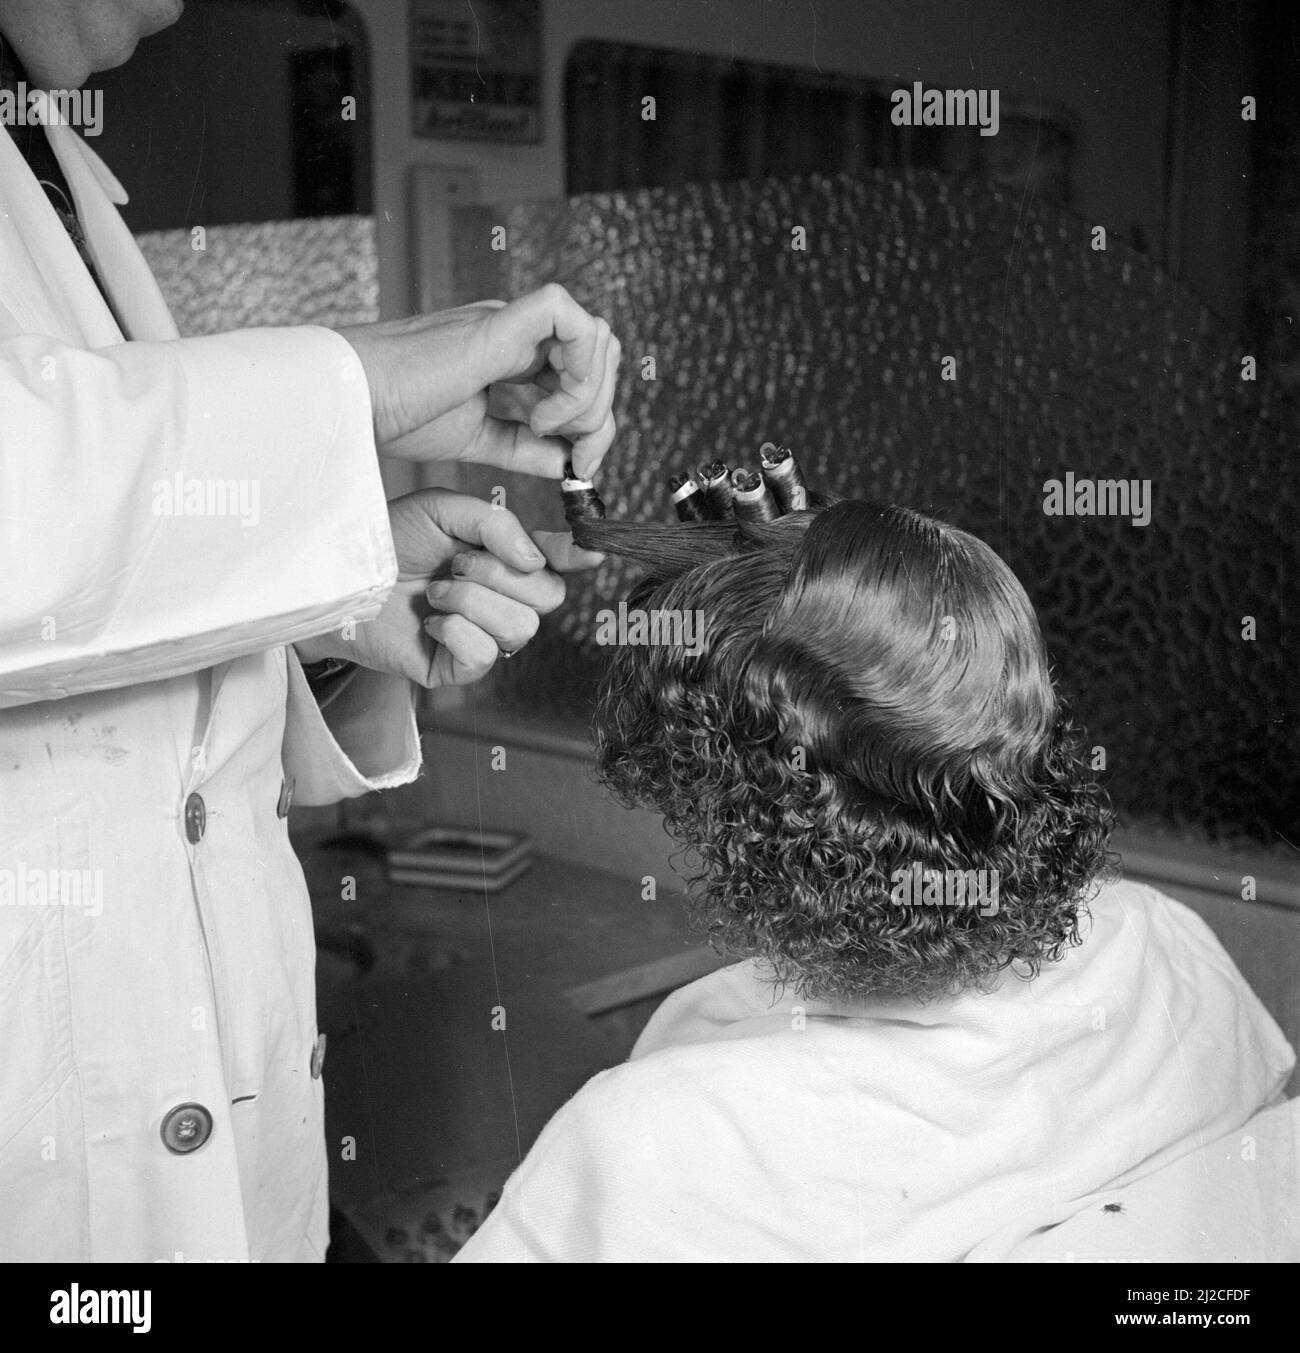 Femme assise dans une chaise dans un salon de coiffure ou salon de beauté ca. 1950 Banque D'Images